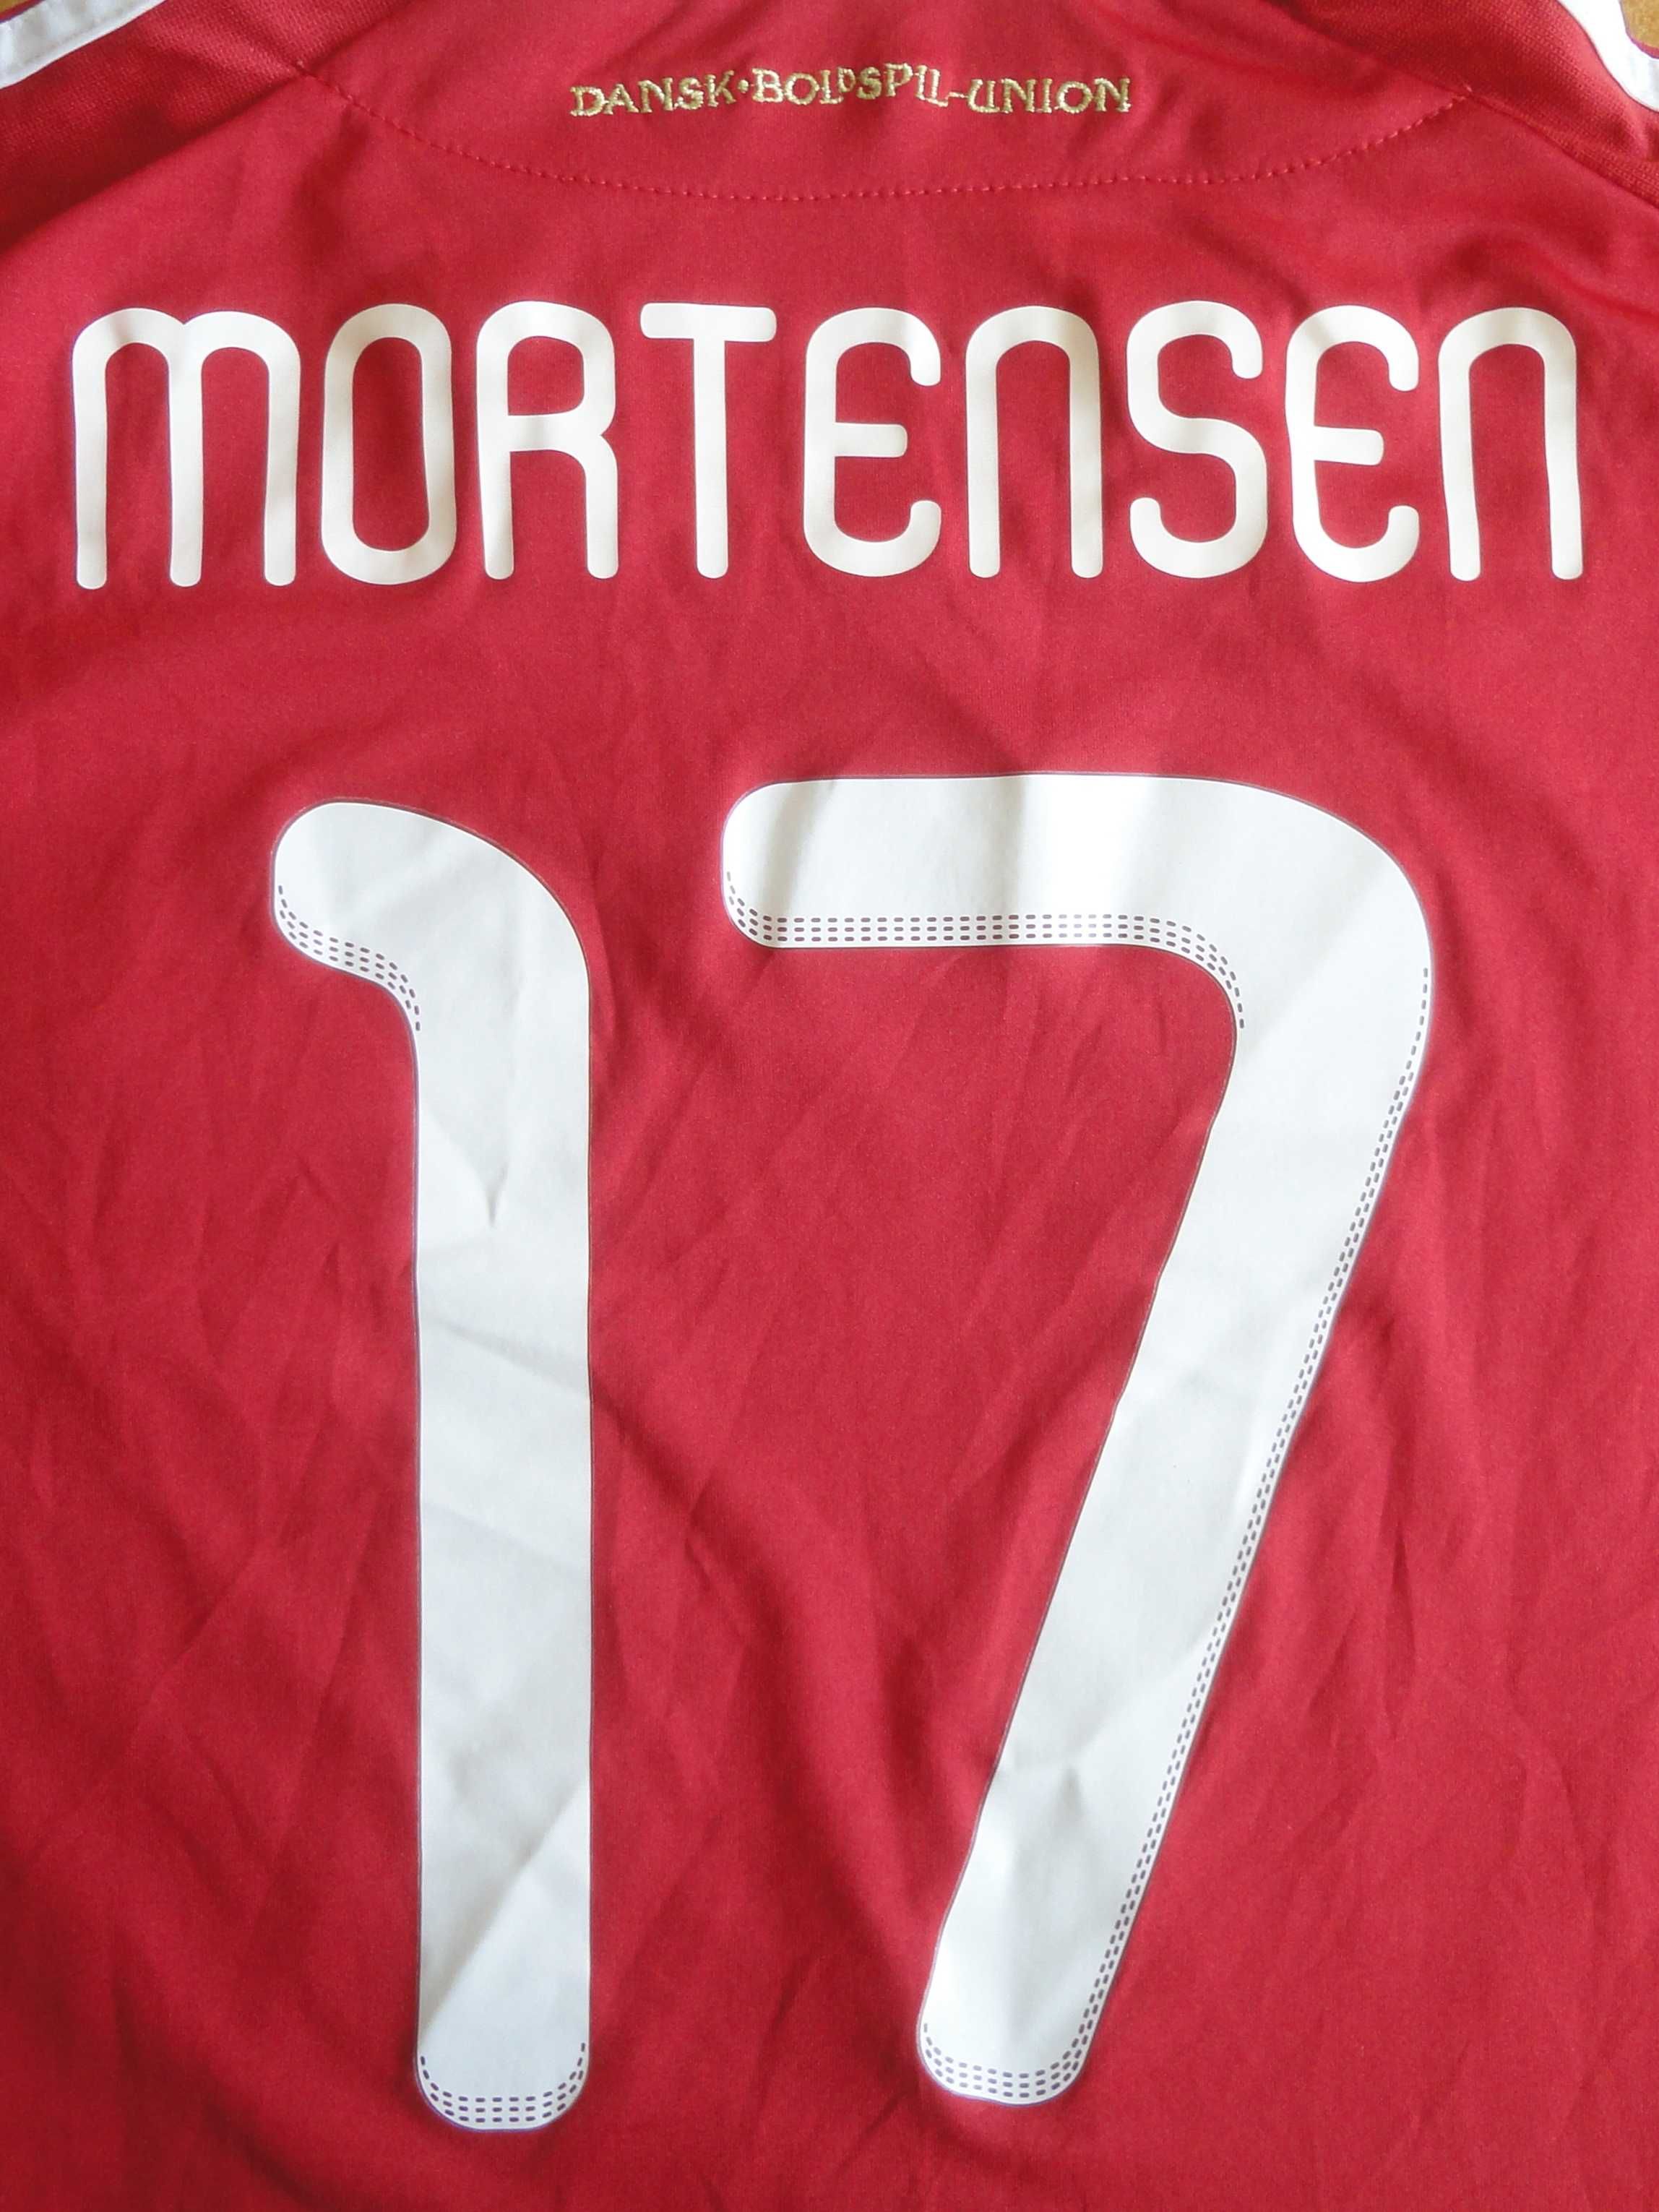 Футболна фланелка на Дания #17 Mortensen, размер - XL